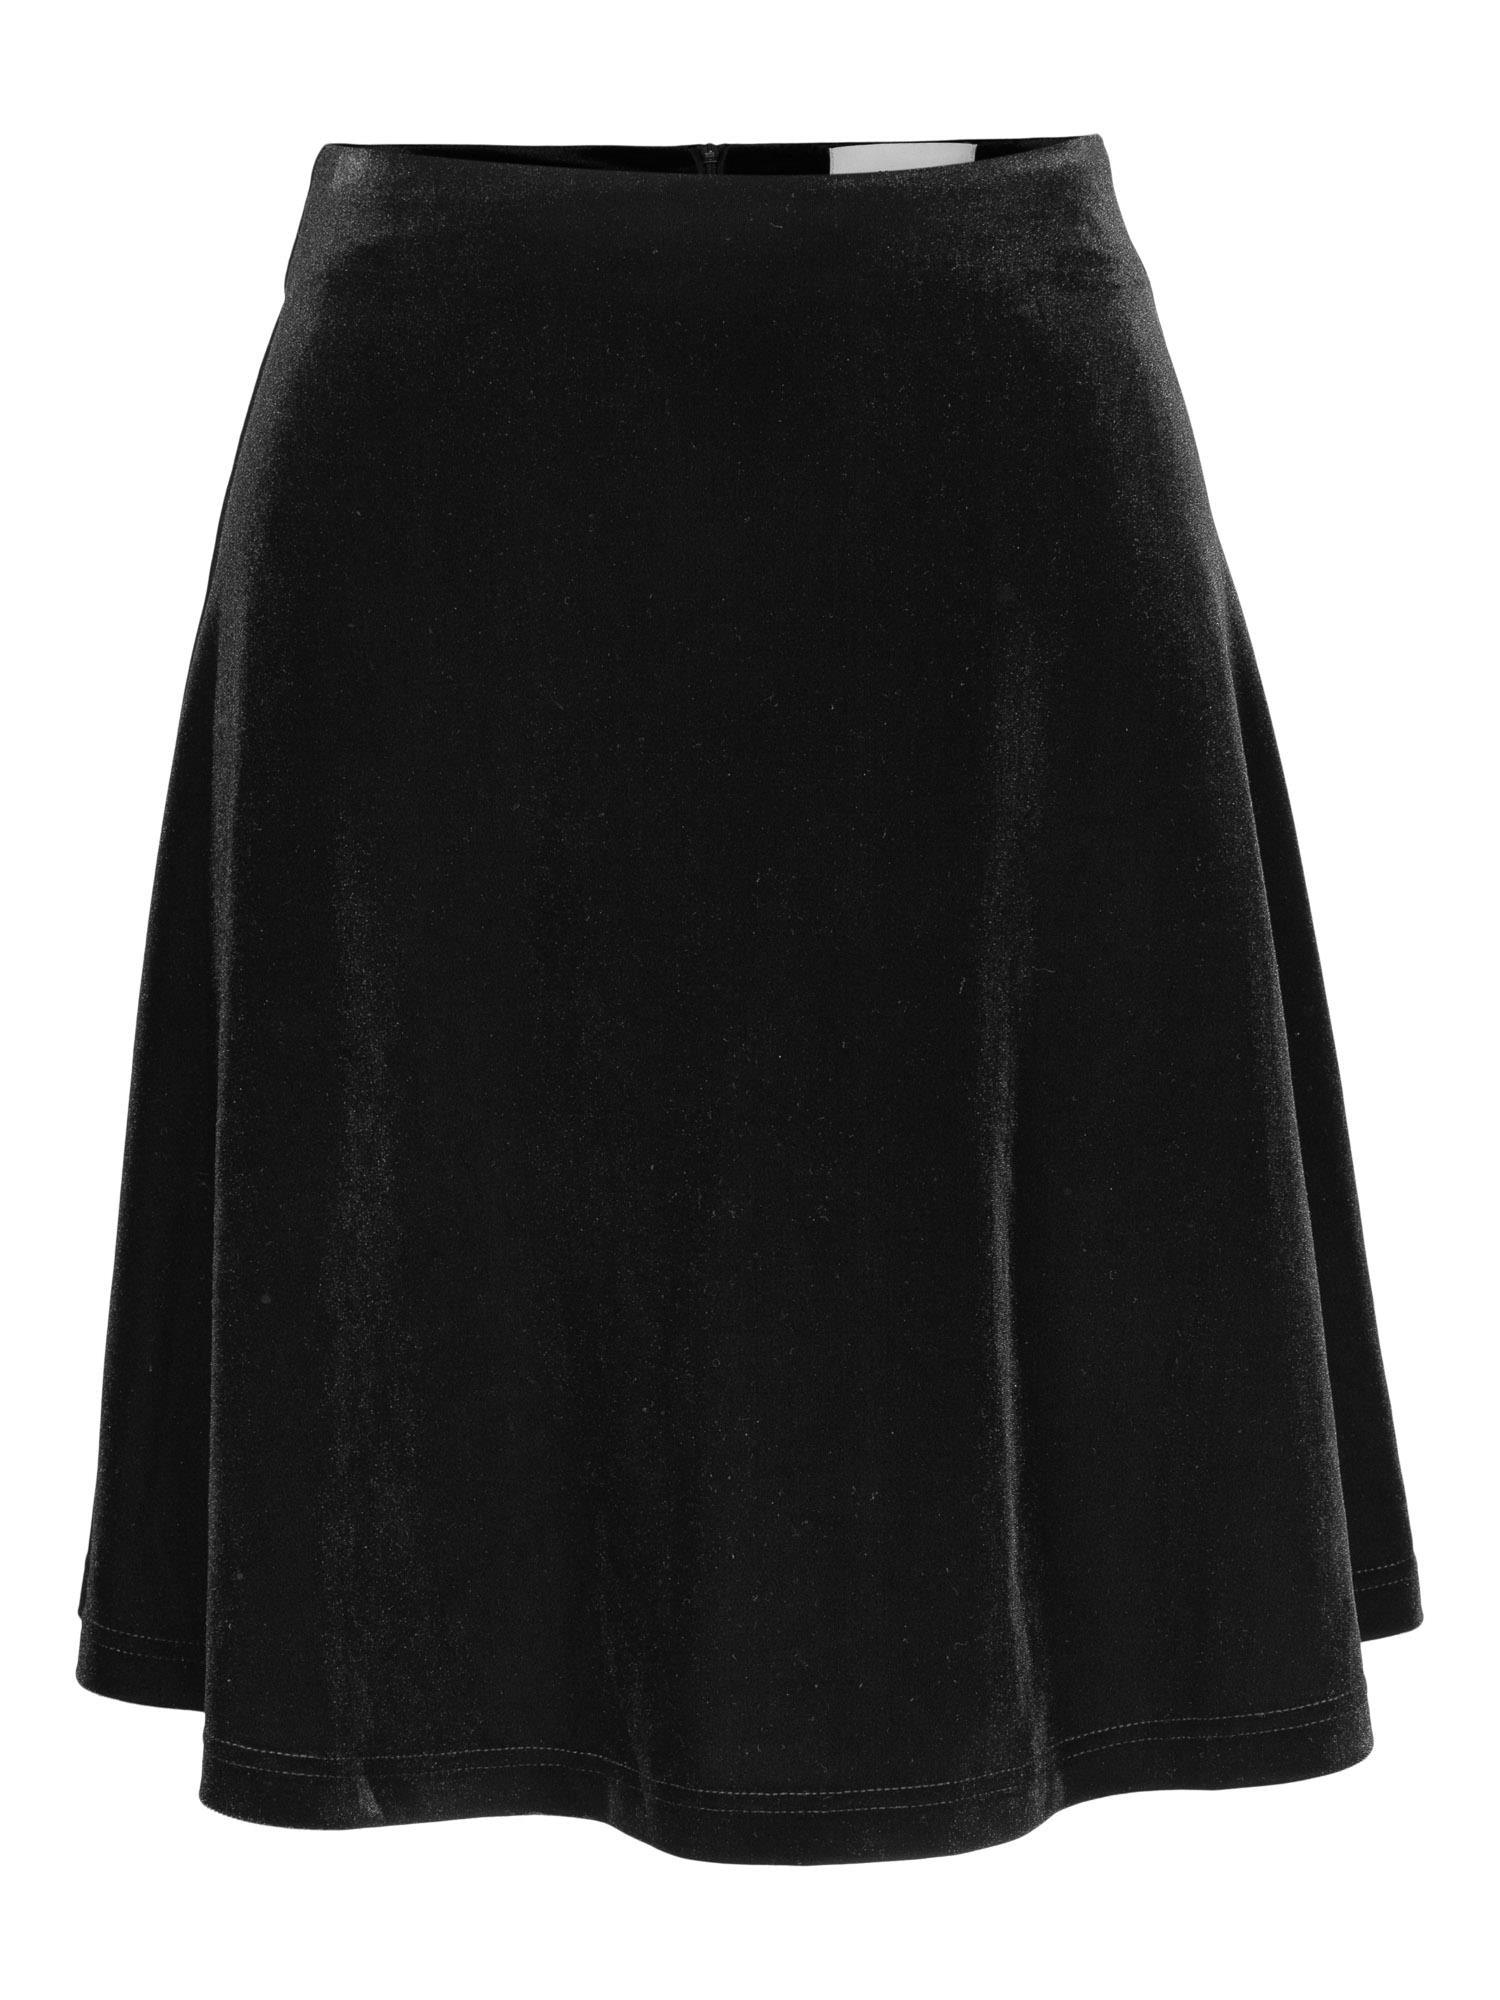 Hanami Velour Skirt Black - No22 Damplassen